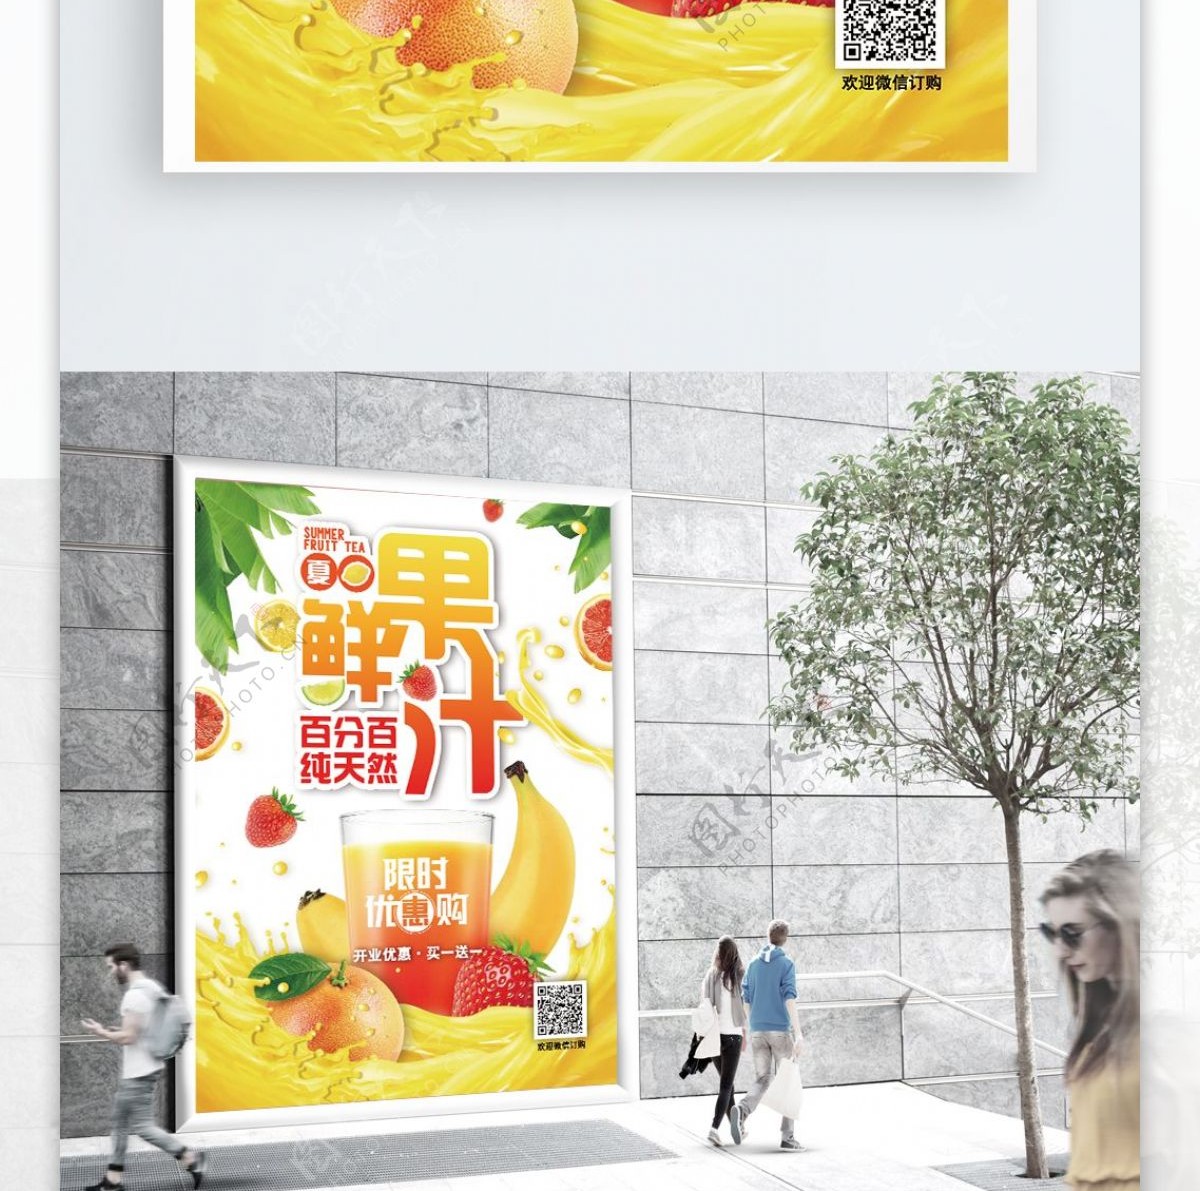 小清新夏日饮料百分百鲜果汁宣传单海报模版